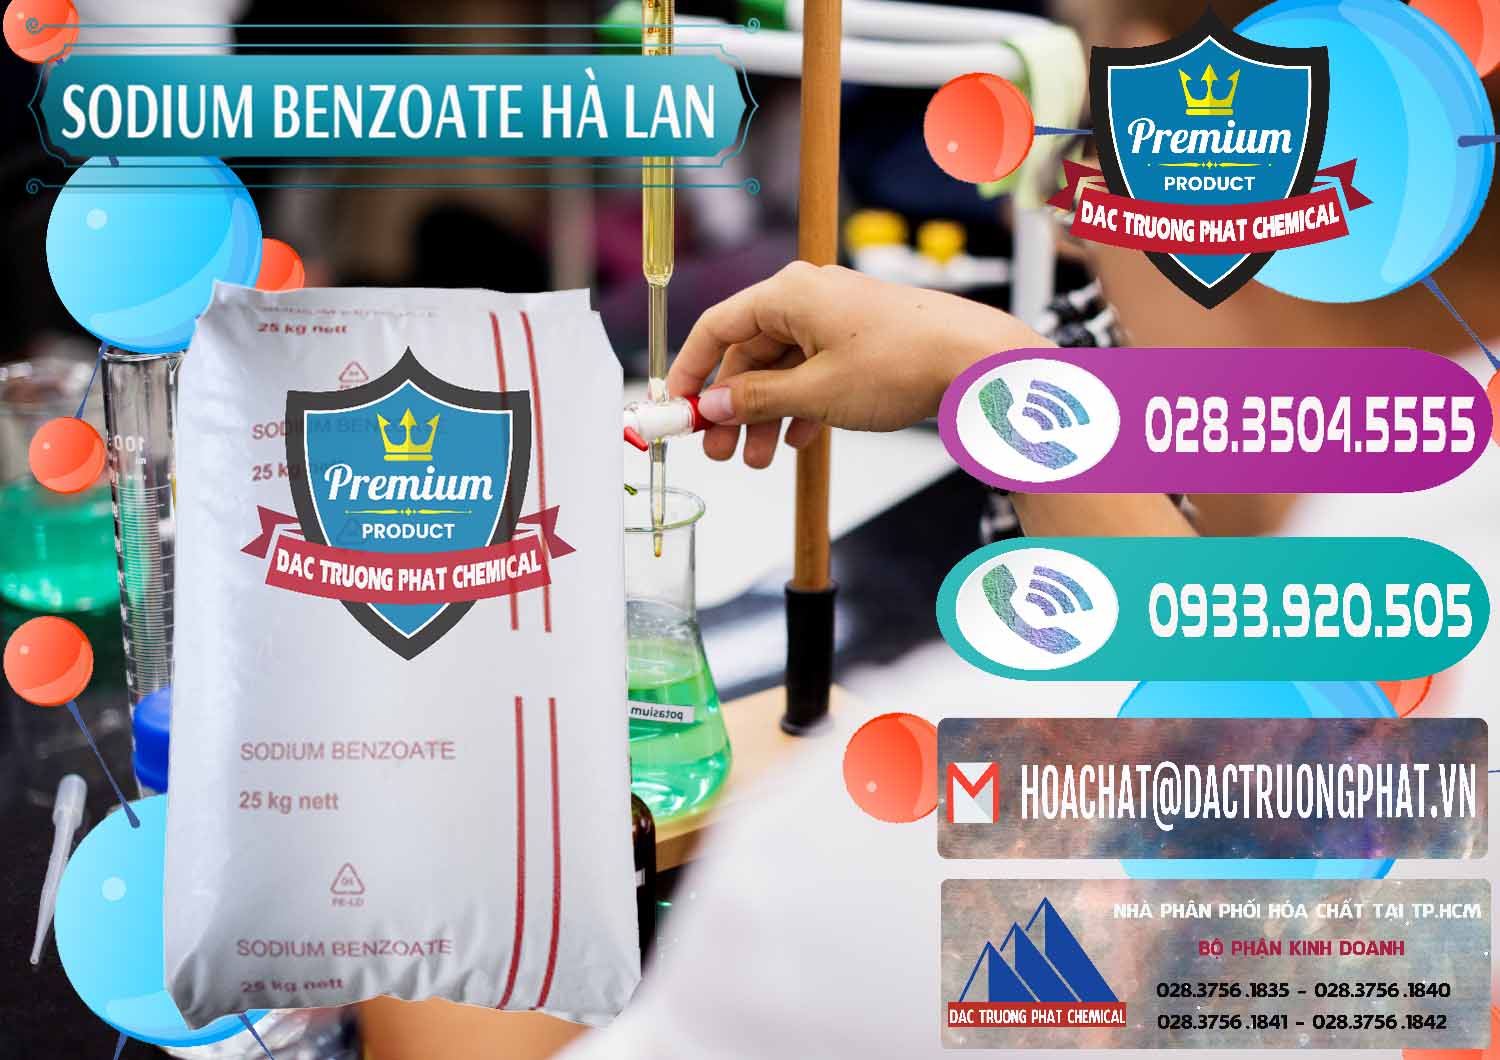 Nơi bán ( cung cấp ) Sodium Benzoate - Mốc Bột Chữ Cam Hà Lan Netherlands - 0360 - Chuyên cung cấp & kinh doanh hóa chất tại TP.HCM - hoachatxulynuoc.com